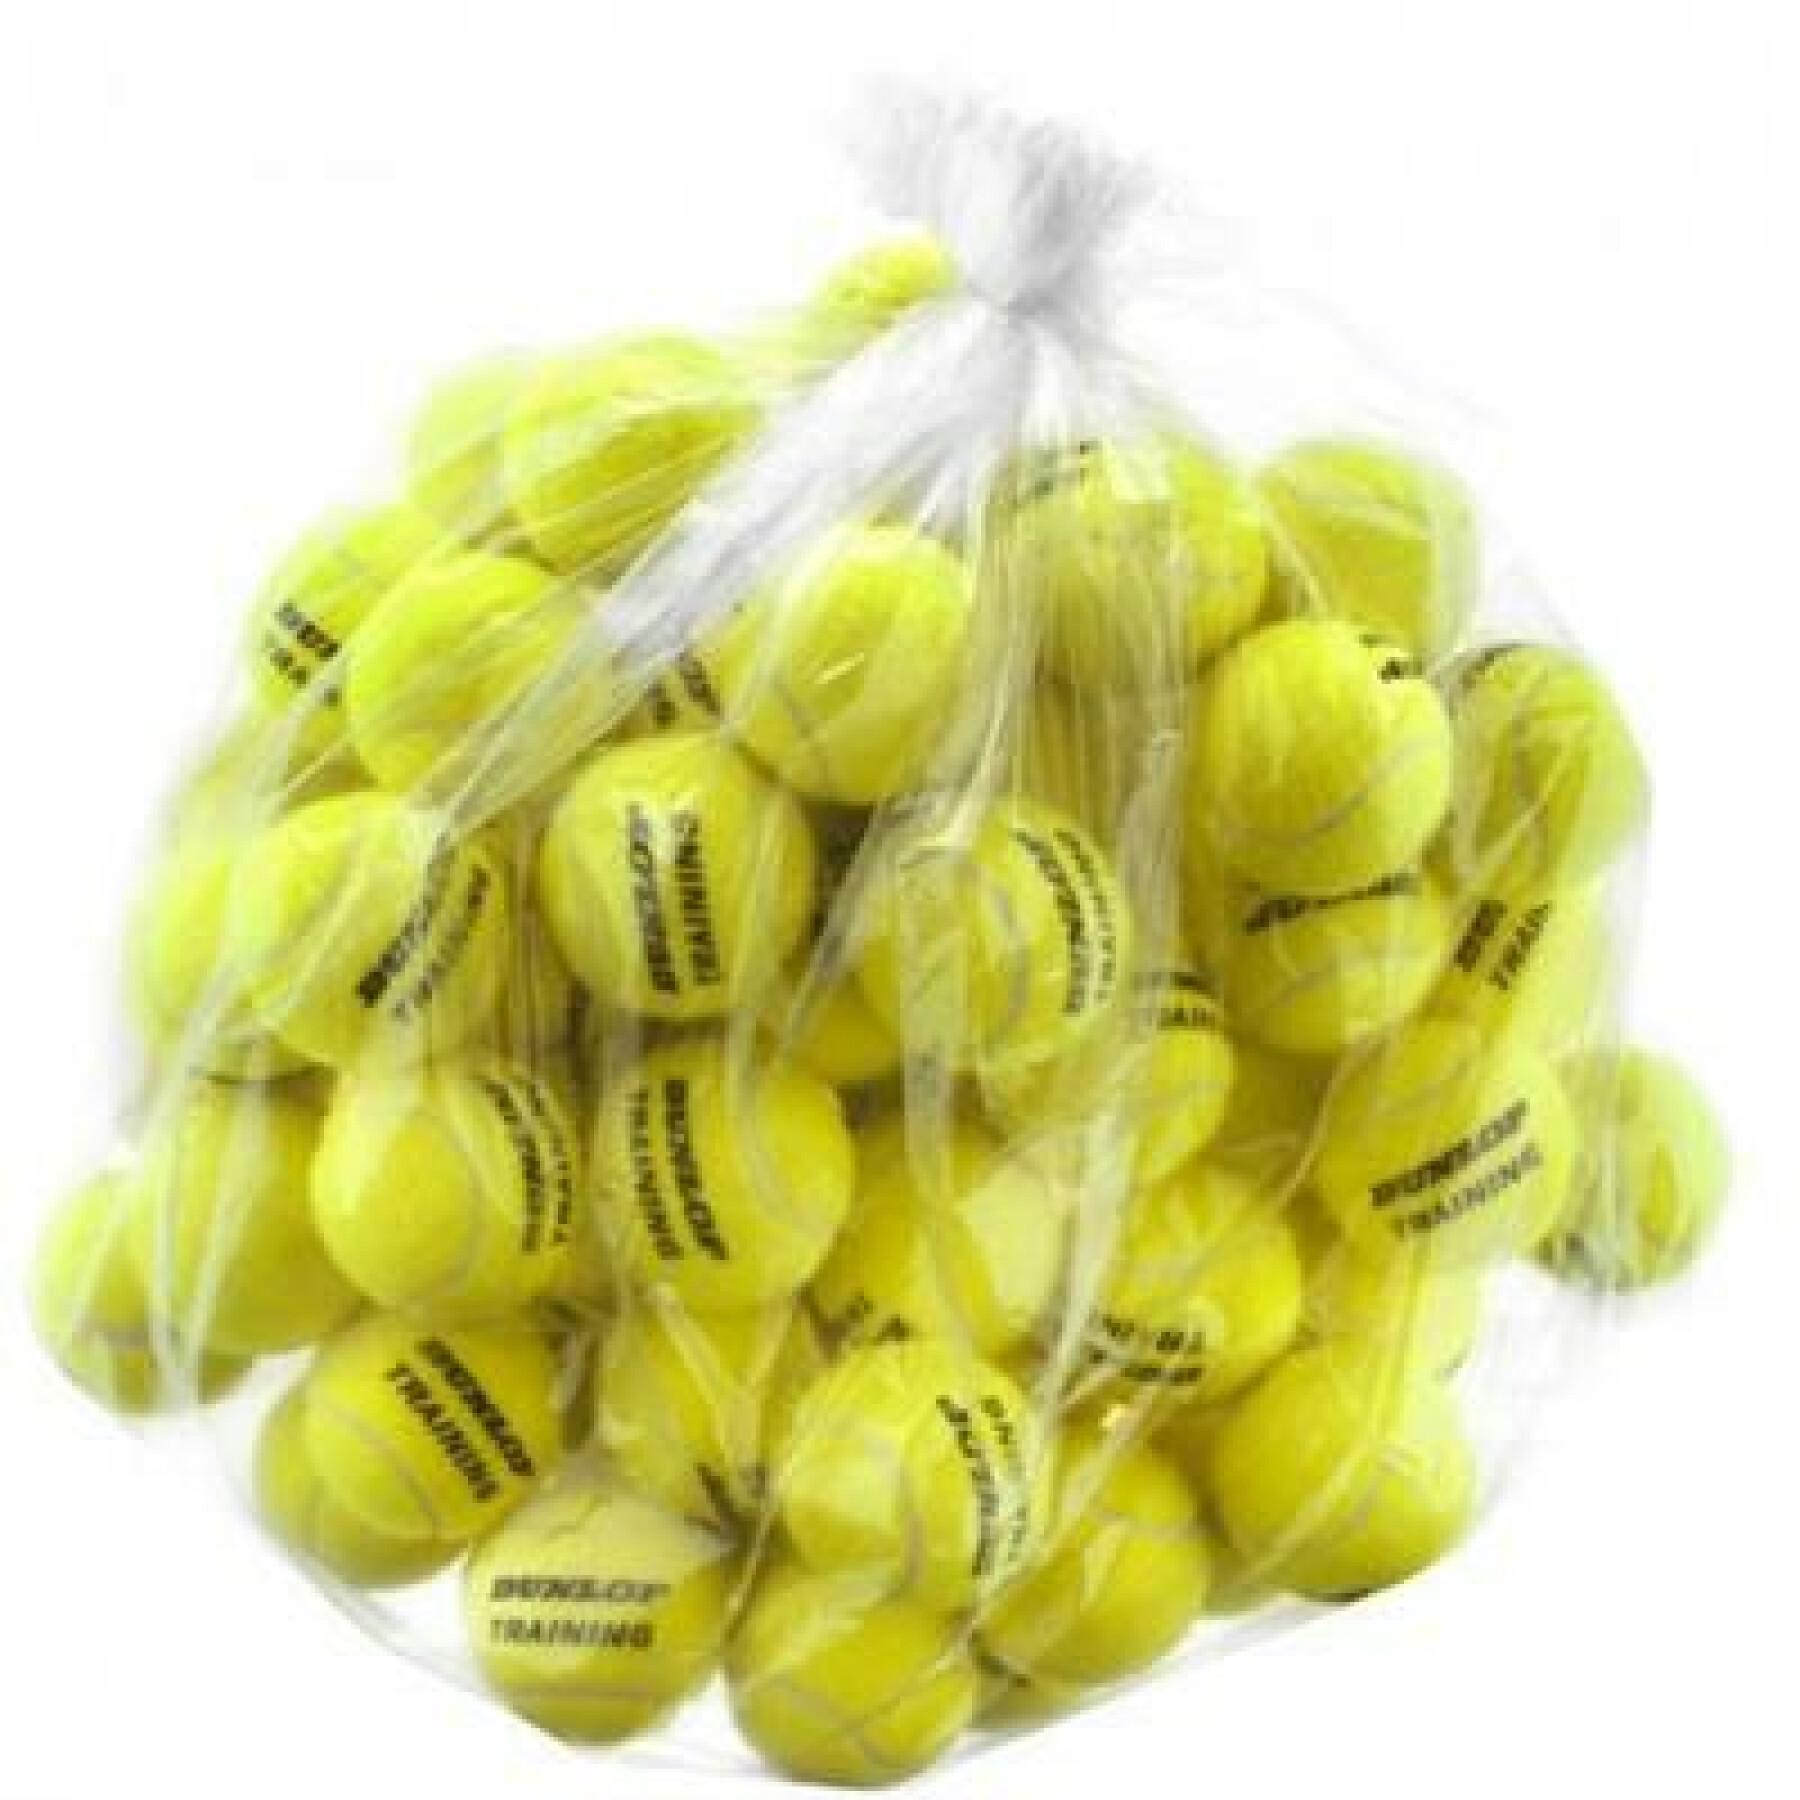 Lote de 60 bolas de ténis Dunlop training